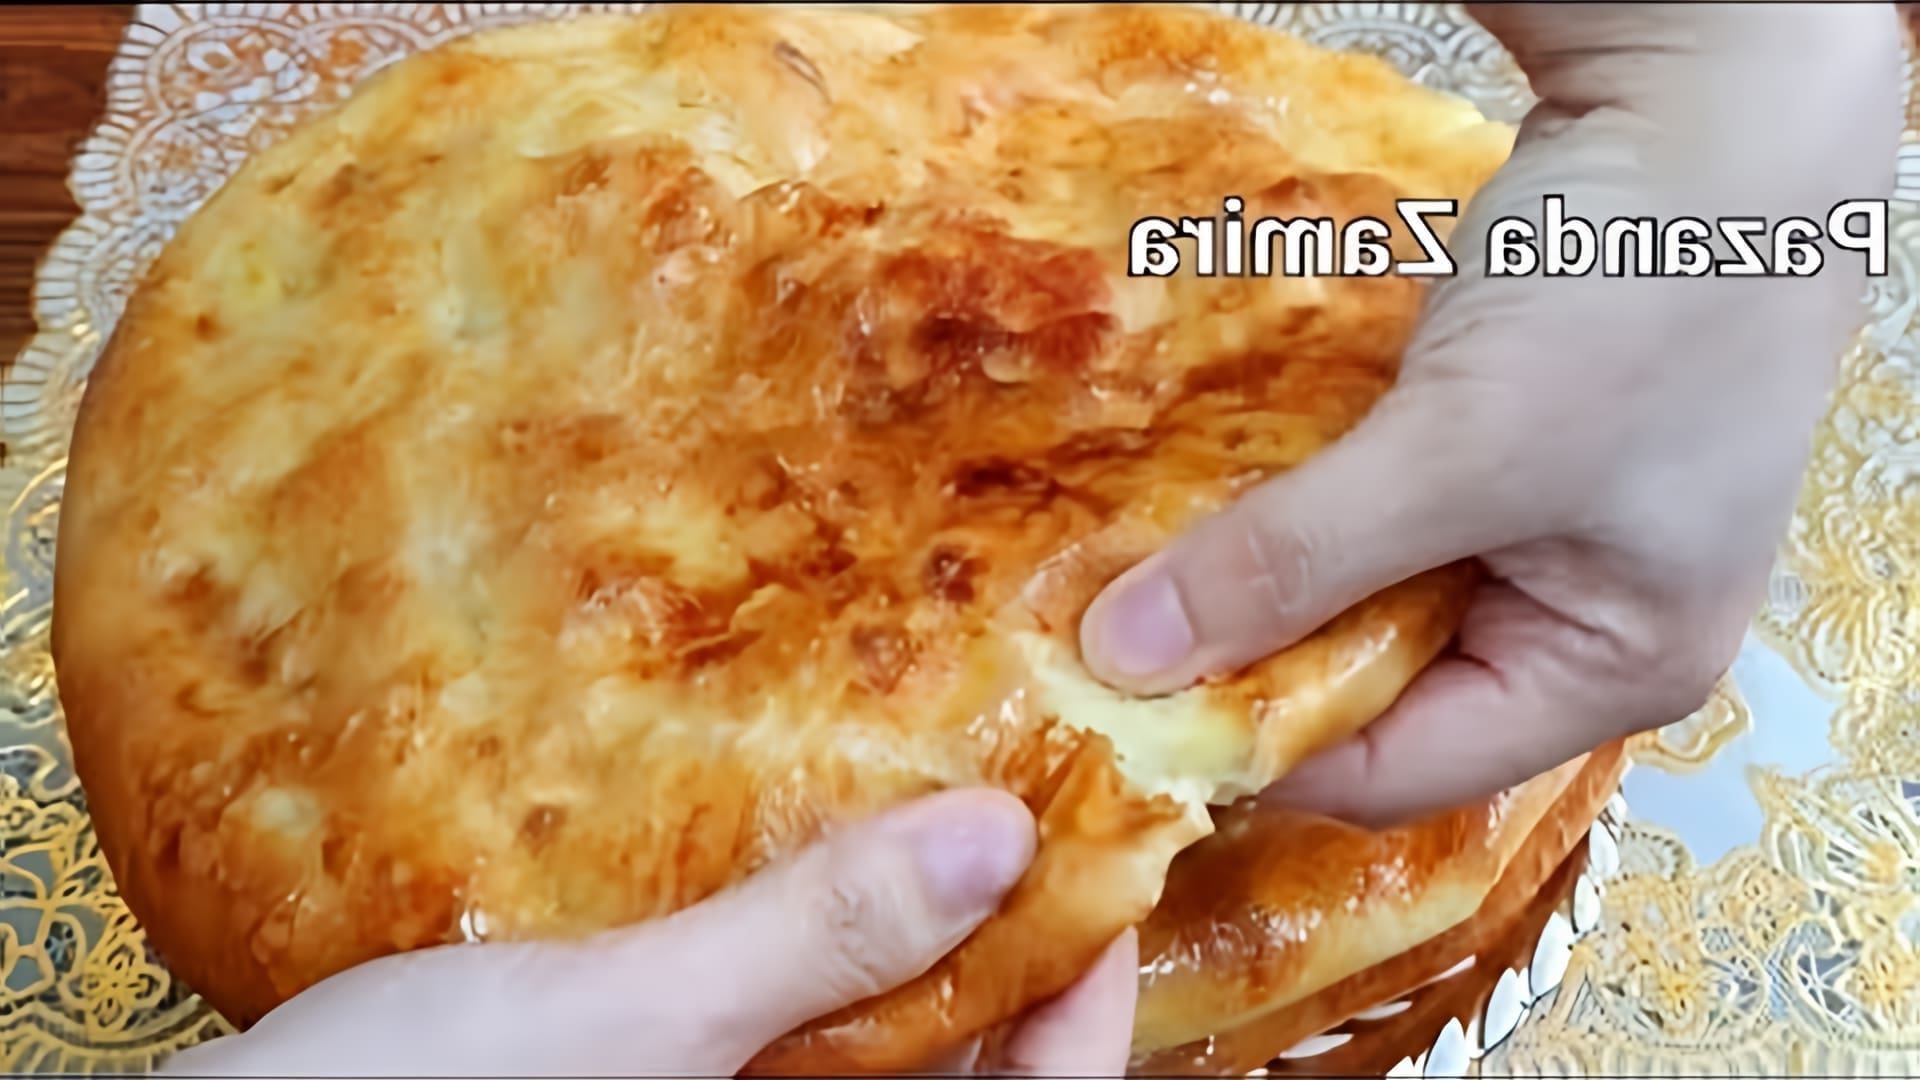 В этом видео демонстрируется процесс приготовления вкусного блюда из картофеля